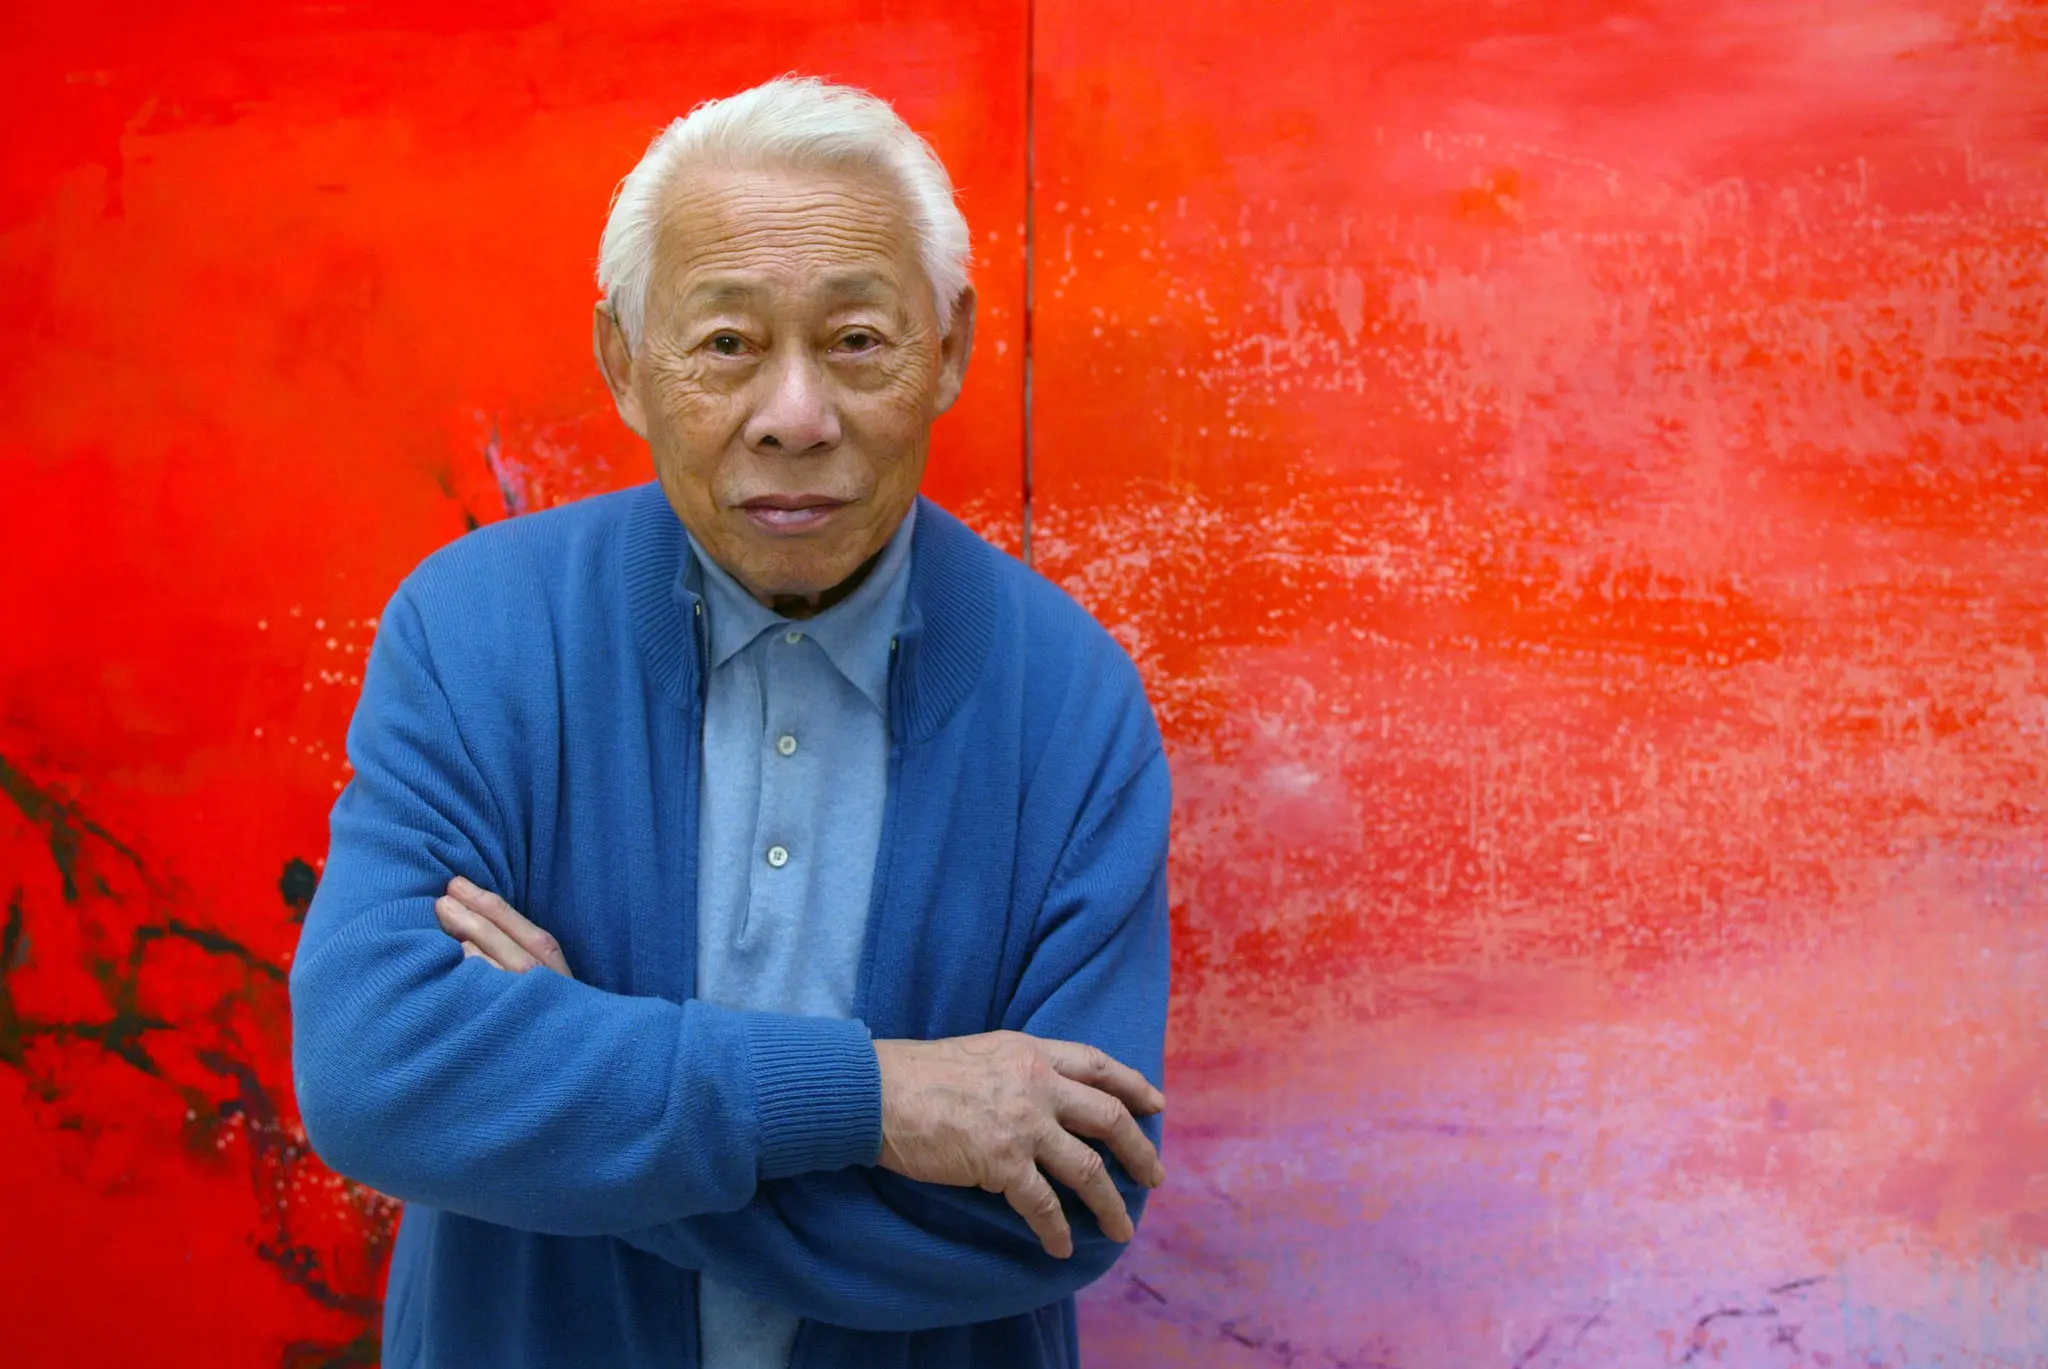 Zao Wou-ki esteve em Paris em 2003. Ele era um emigrado nascido em Pequim e um artista de sucesso cujo trabalho foi defendido por nomes como Jacques Chirac. (Crédito da fotografia: François Guillot/Agência France-Presse — Getty Images)